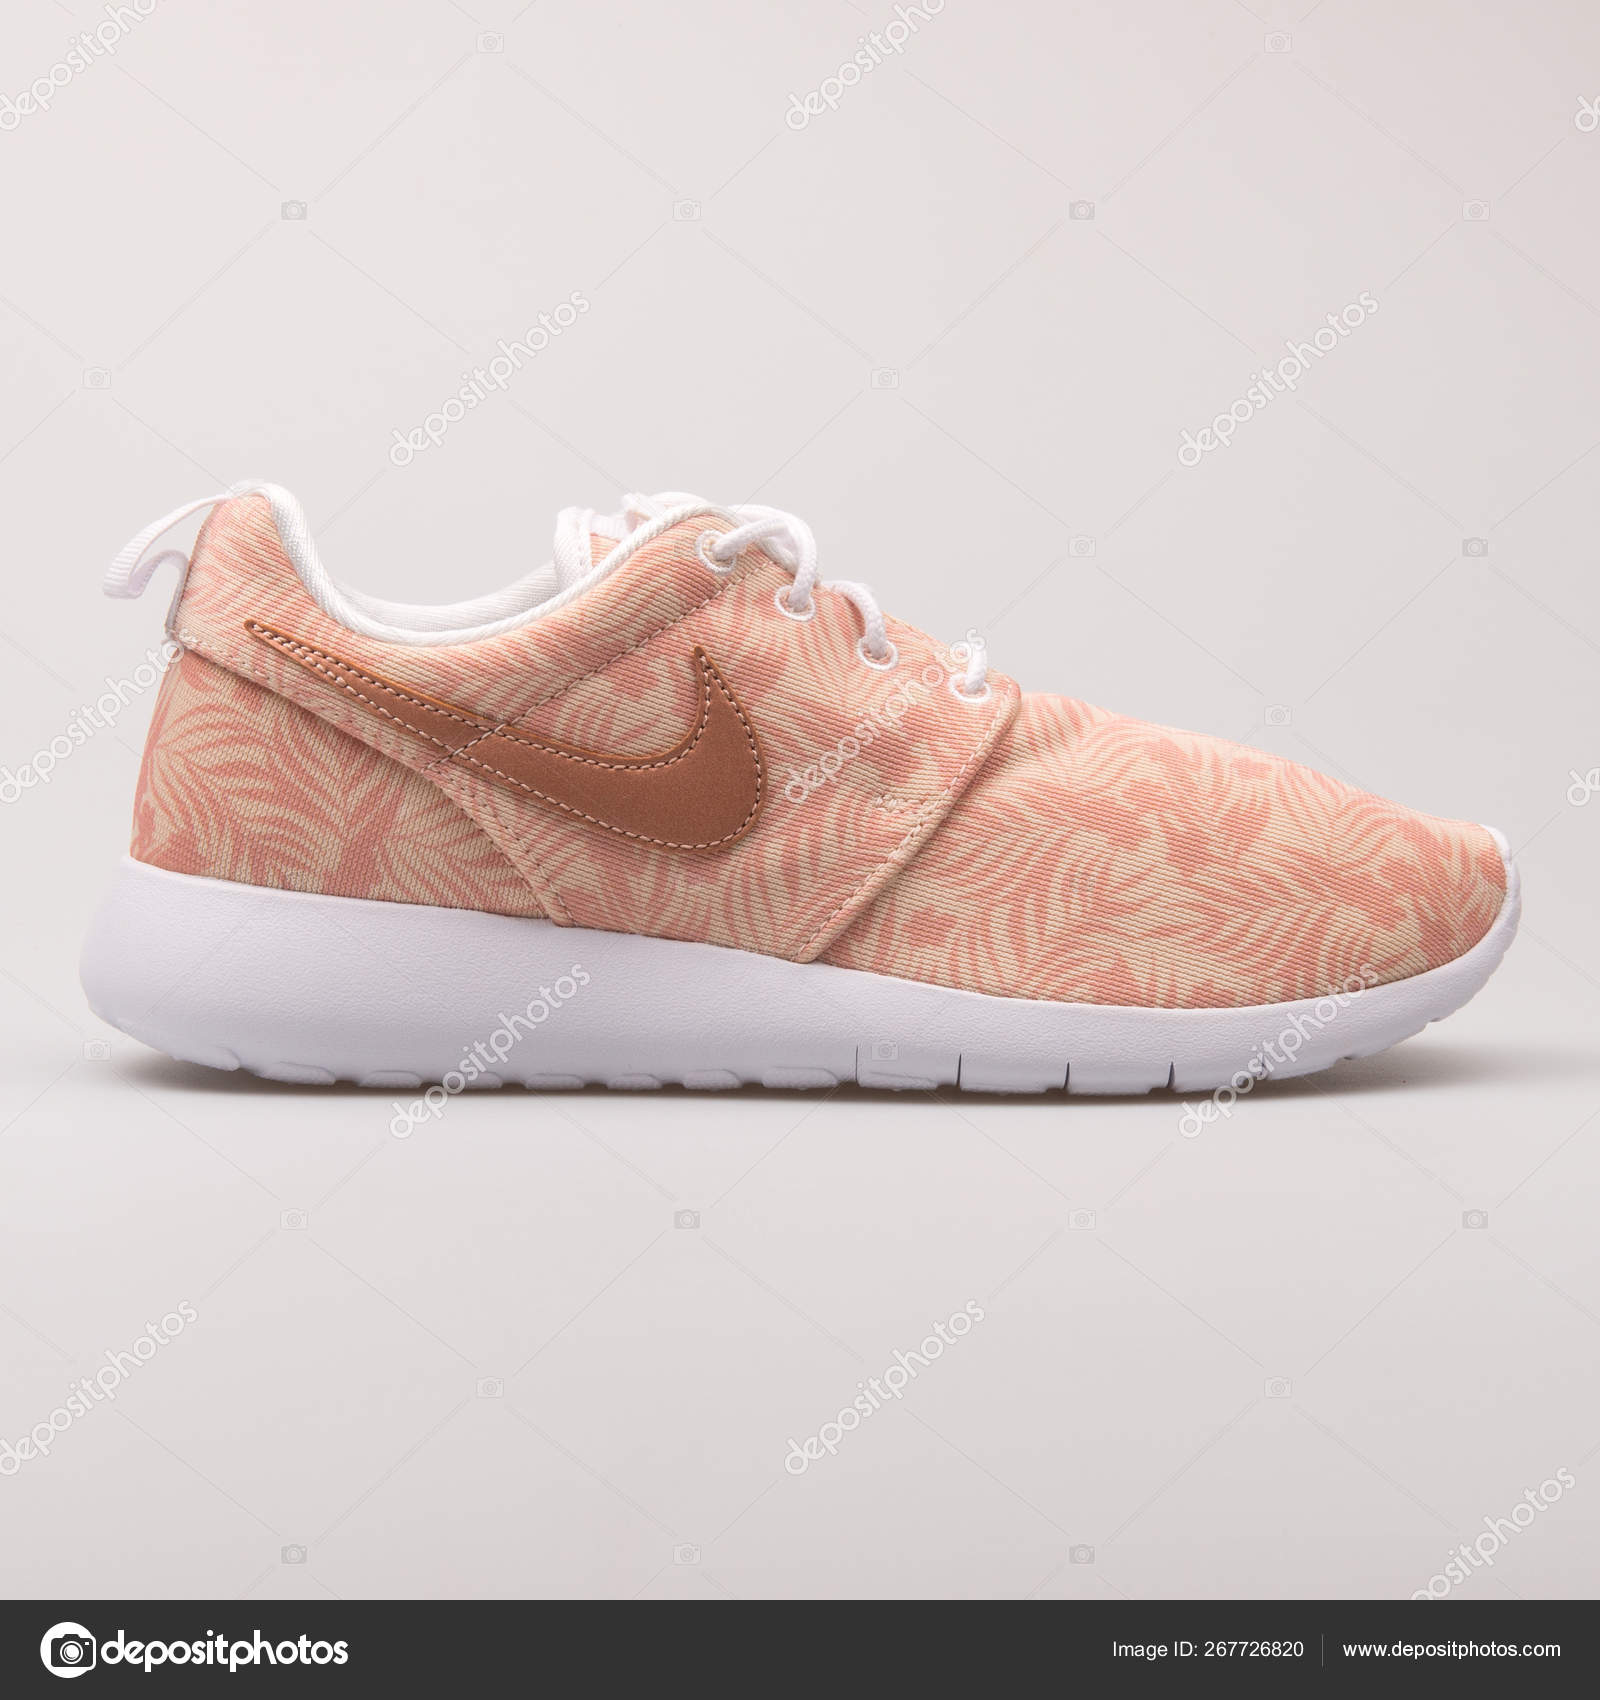 nike roshe run pink printed trainers